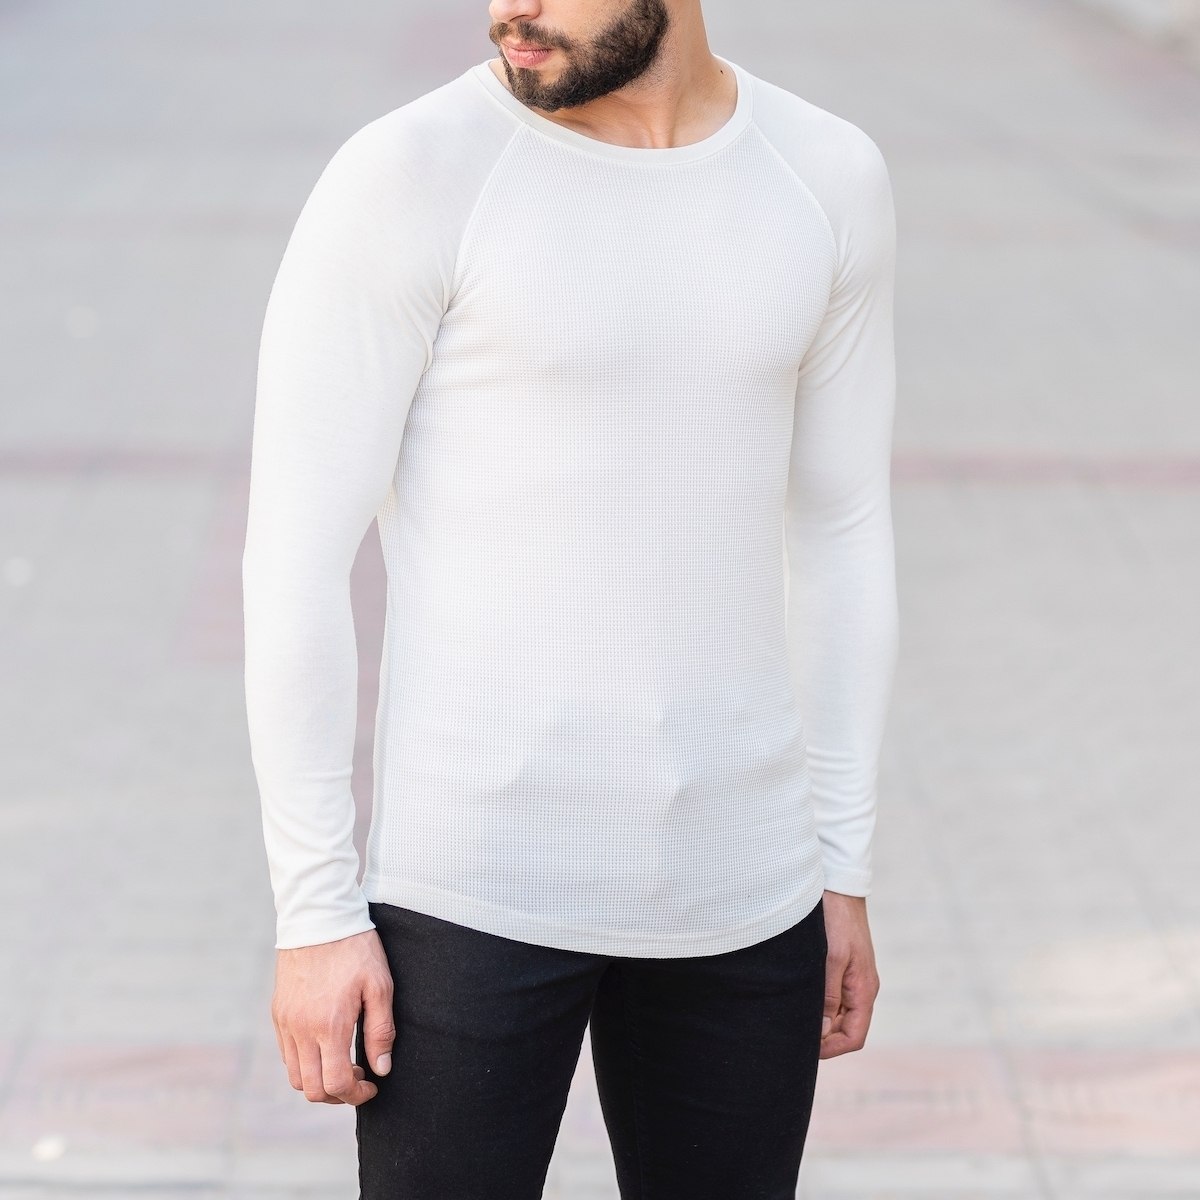 Herren Slim-Fit Sweatshirt in weiß - 2